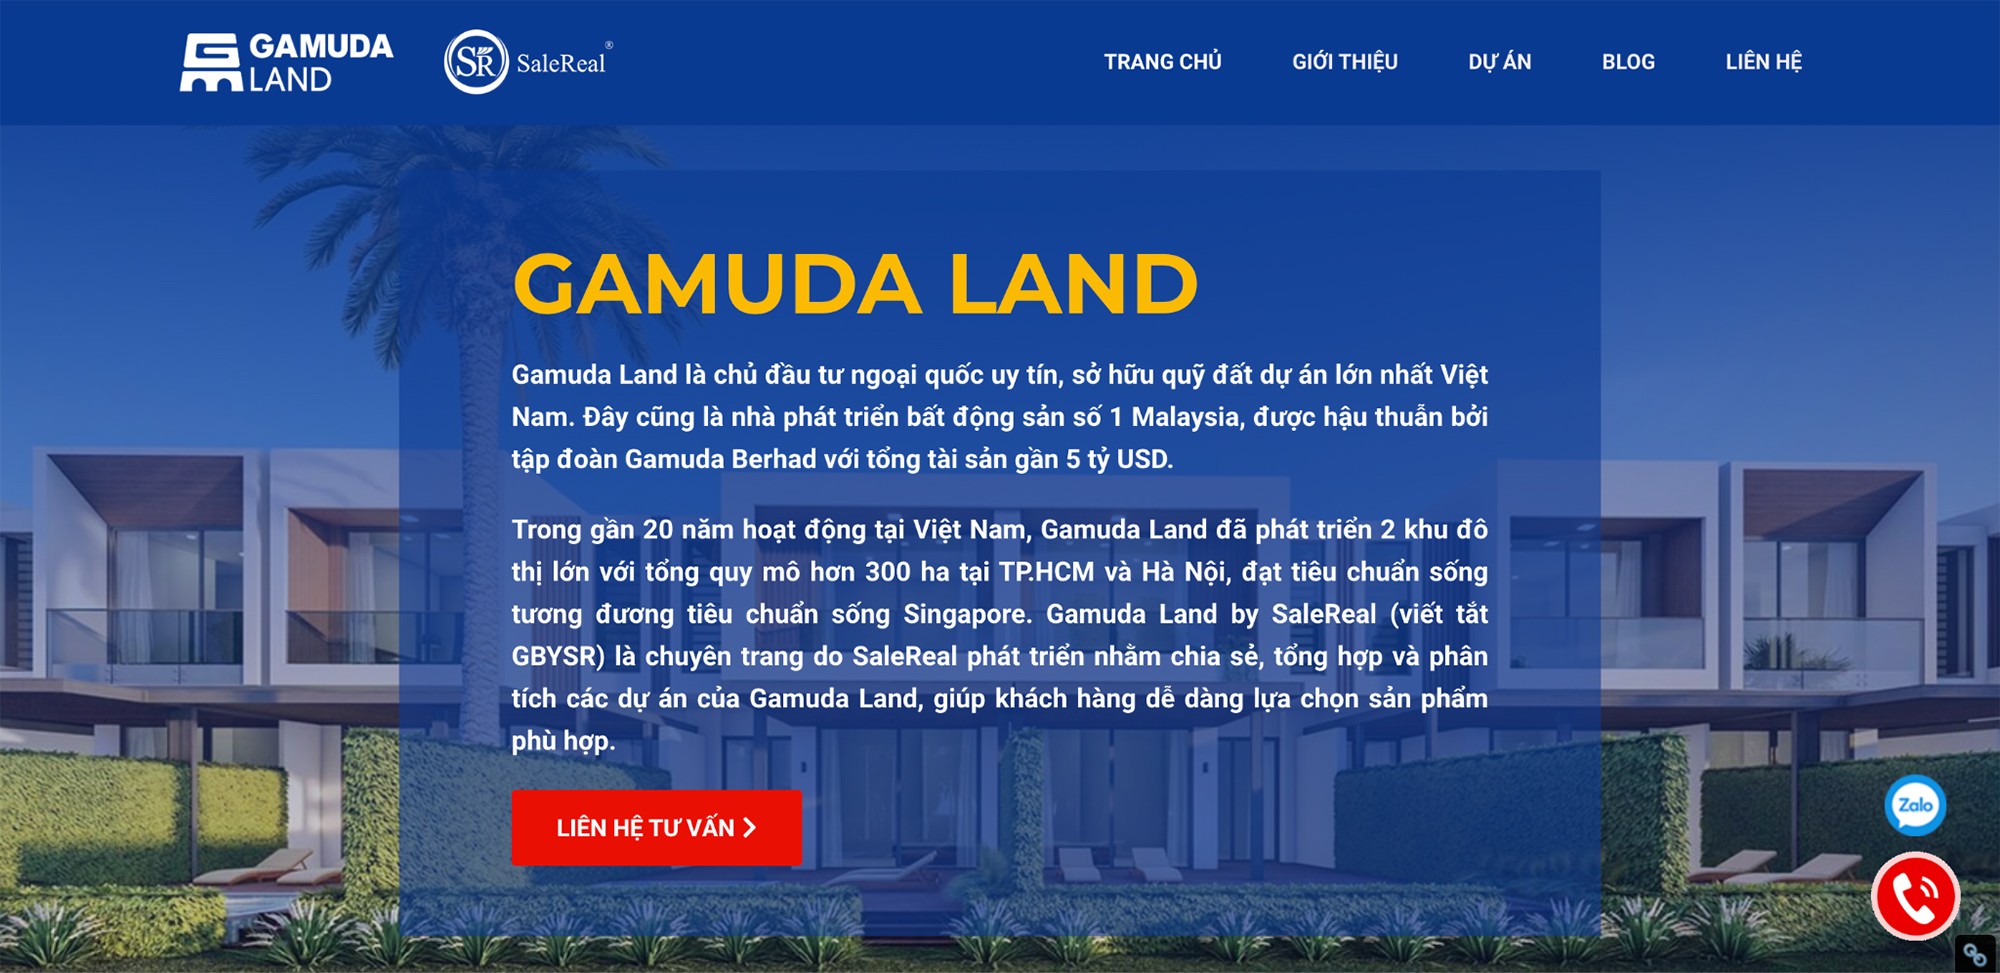 Giao diện chuyên trang Gamuda Land by SaleReal đơn giản, dễ hình và tốc độ tải trang rất nhanh. Mang đến trải nghiệm tốt nhất cho người dùng